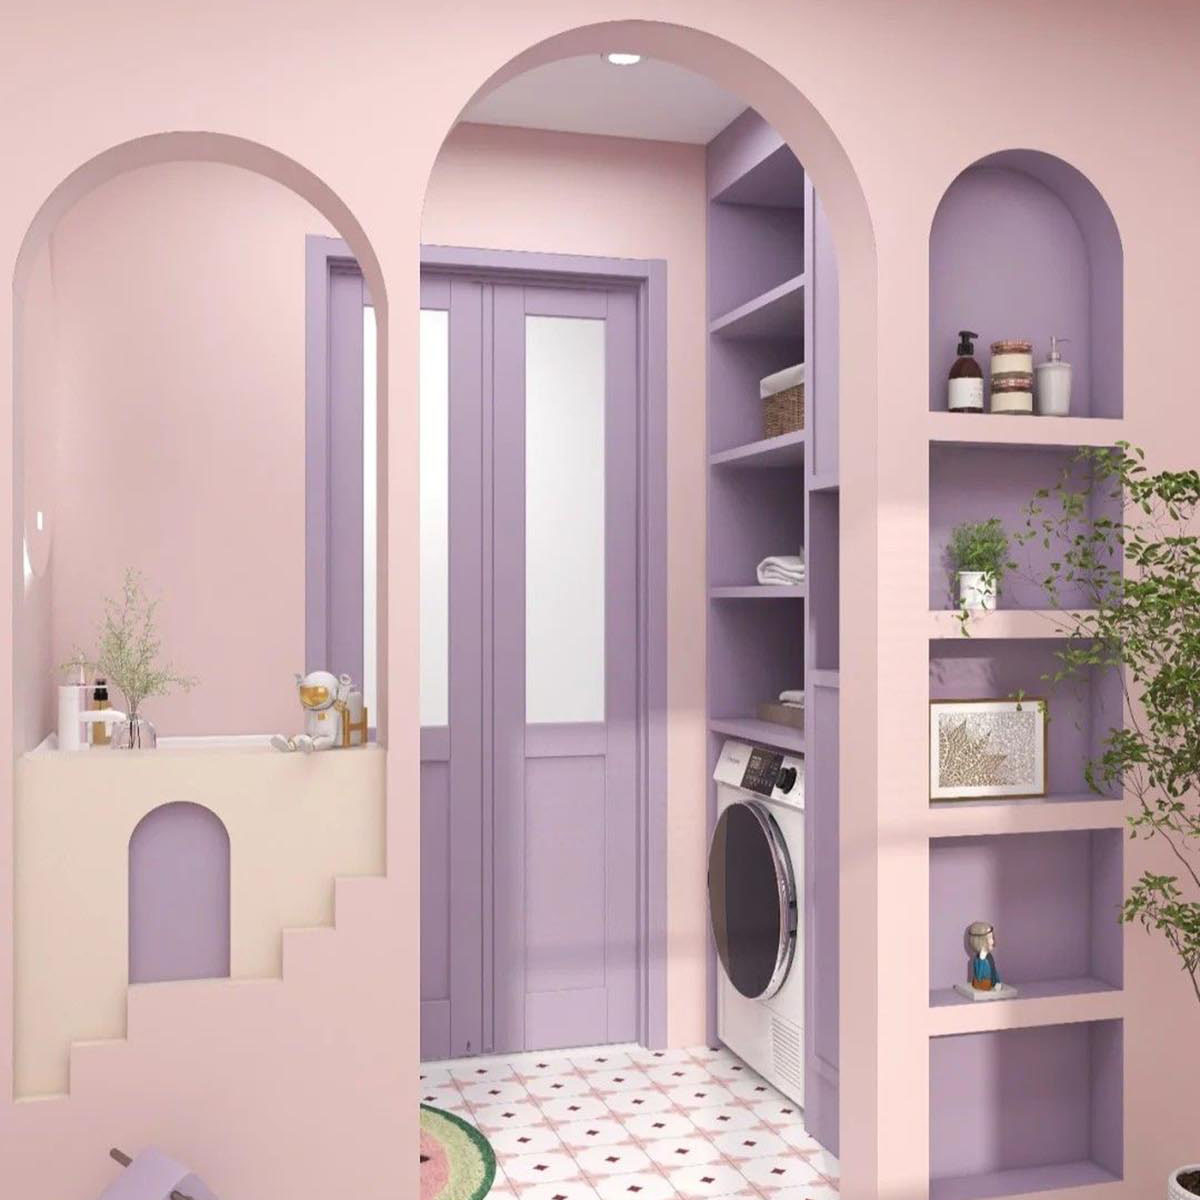 Màu tím lilac nhẹ nhàng cho phòng vệ sinh. Nguồn: Pinterest